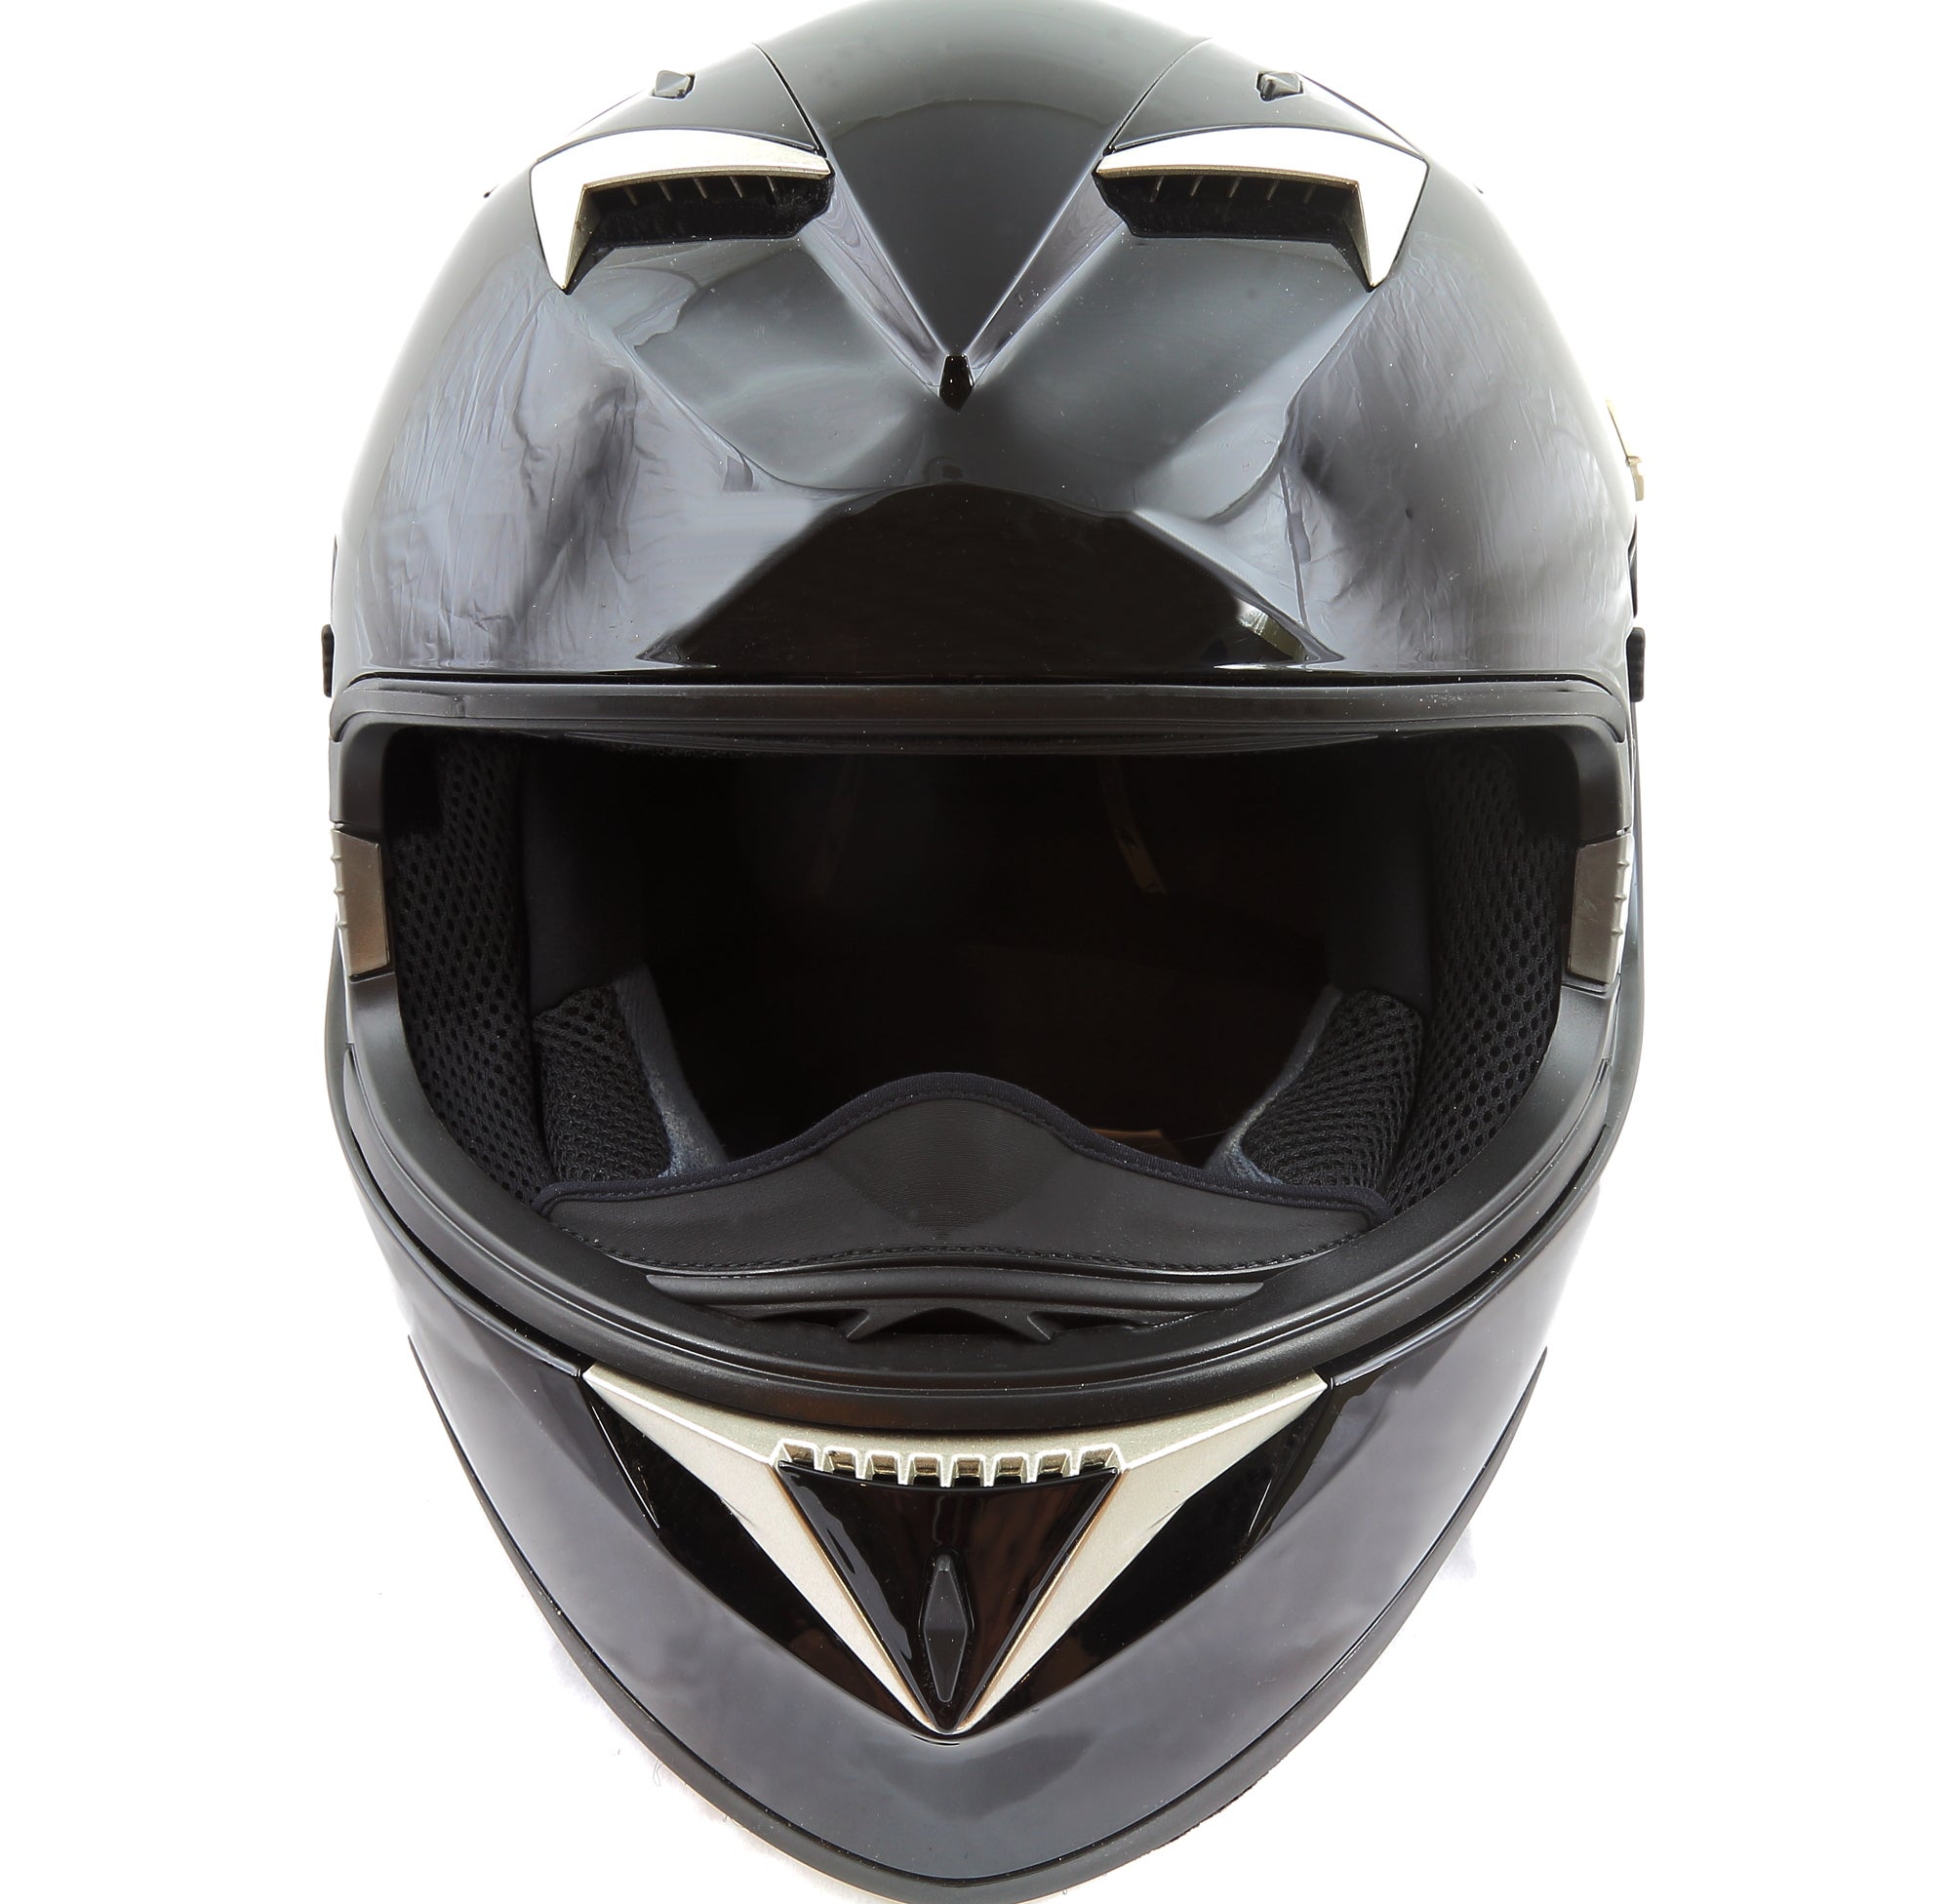 Best Motorcycle Helmet Speakers (Review & Buying Guide) in 2022